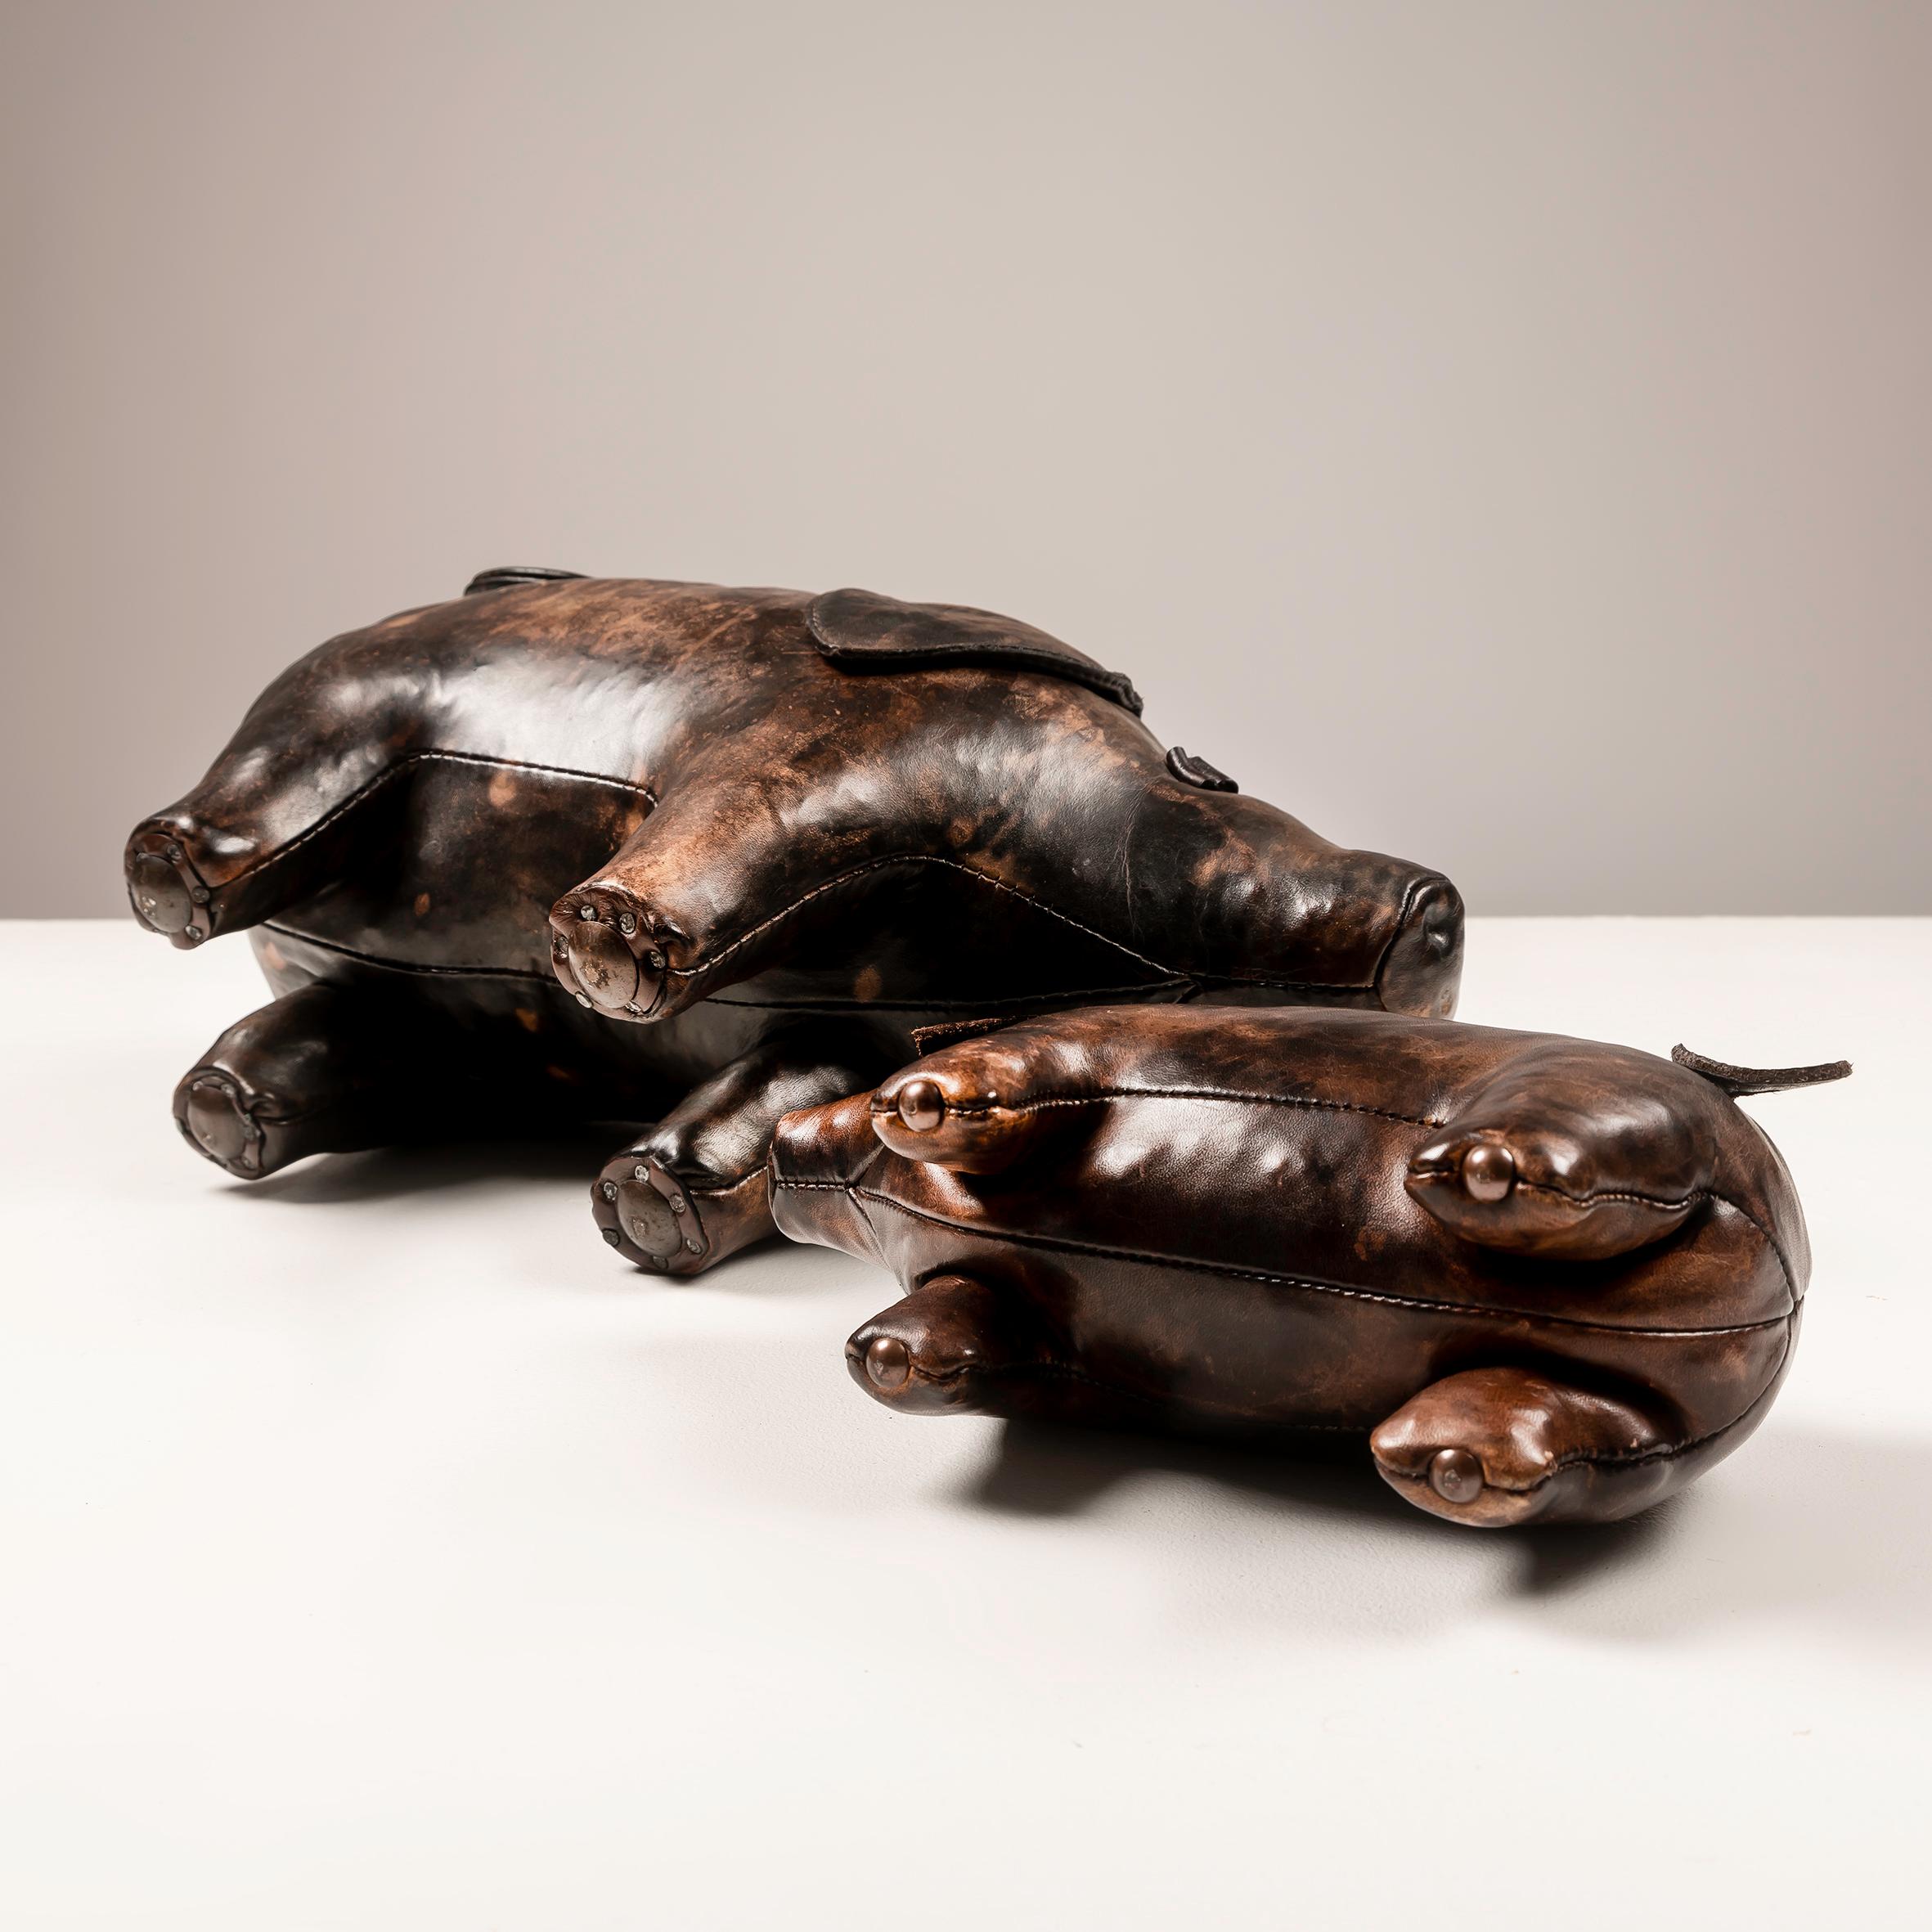 Der aus den 1960er Jahren stammende Leather Pigs Ottoman von Dimitri Omersa ist ein wirklich einzigartiges und fesselndes Stück funktionaler Kunst. Mit viel Liebe zum Detail und einem skurrilen Flair gefertigt, sind diese Ottomanen nicht nur